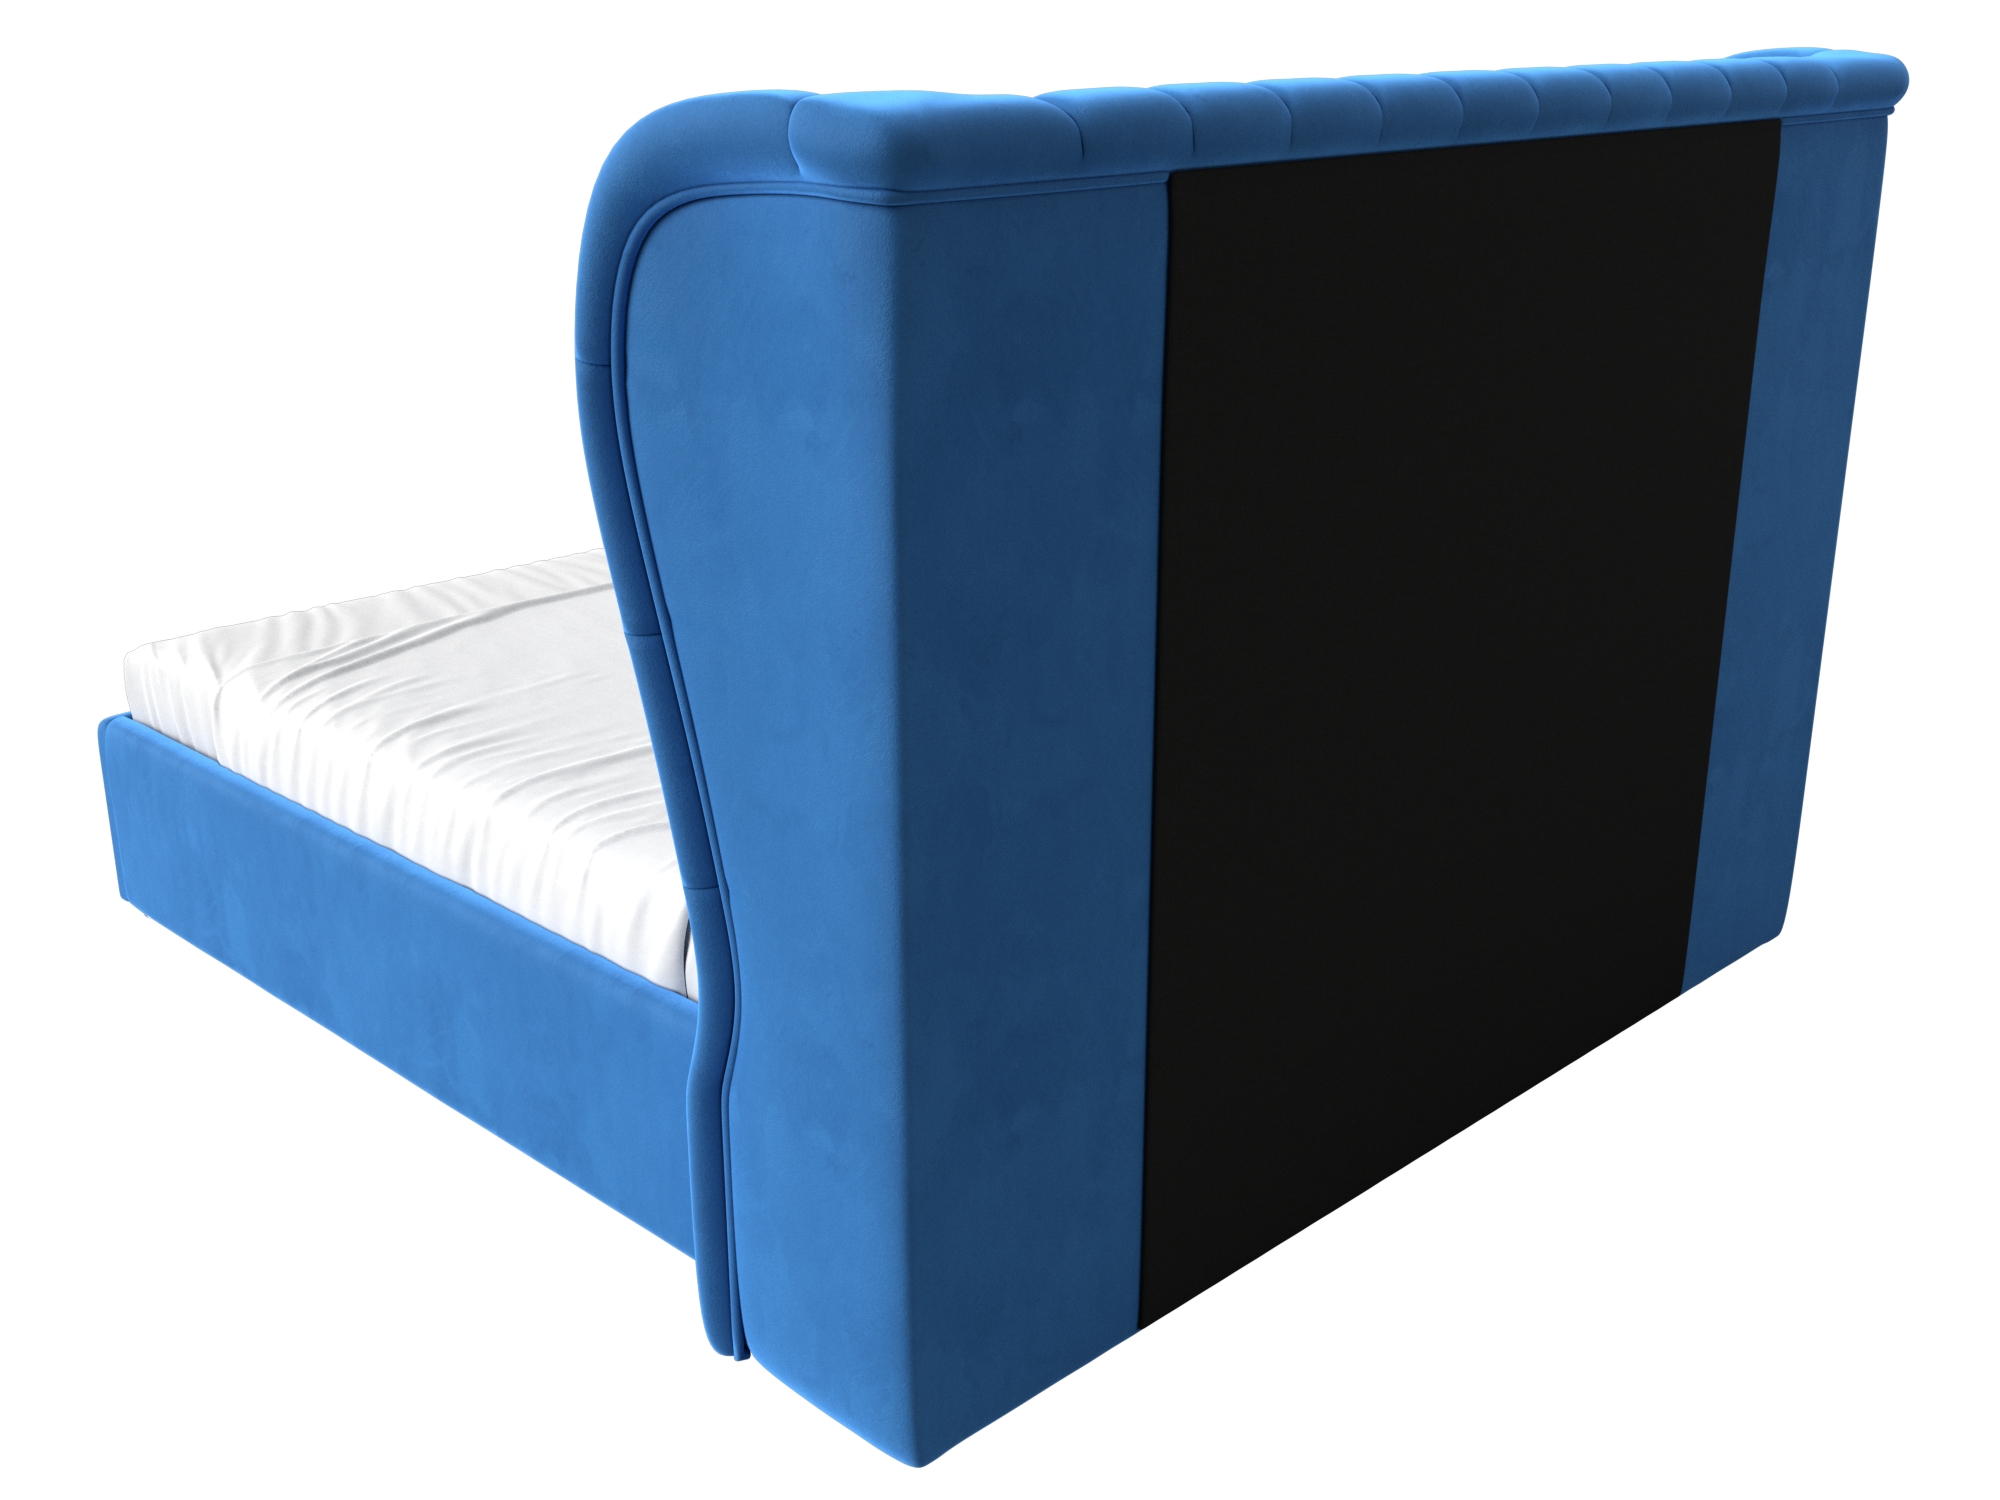 Интерьерная кровать Далия 180 (Голубой)